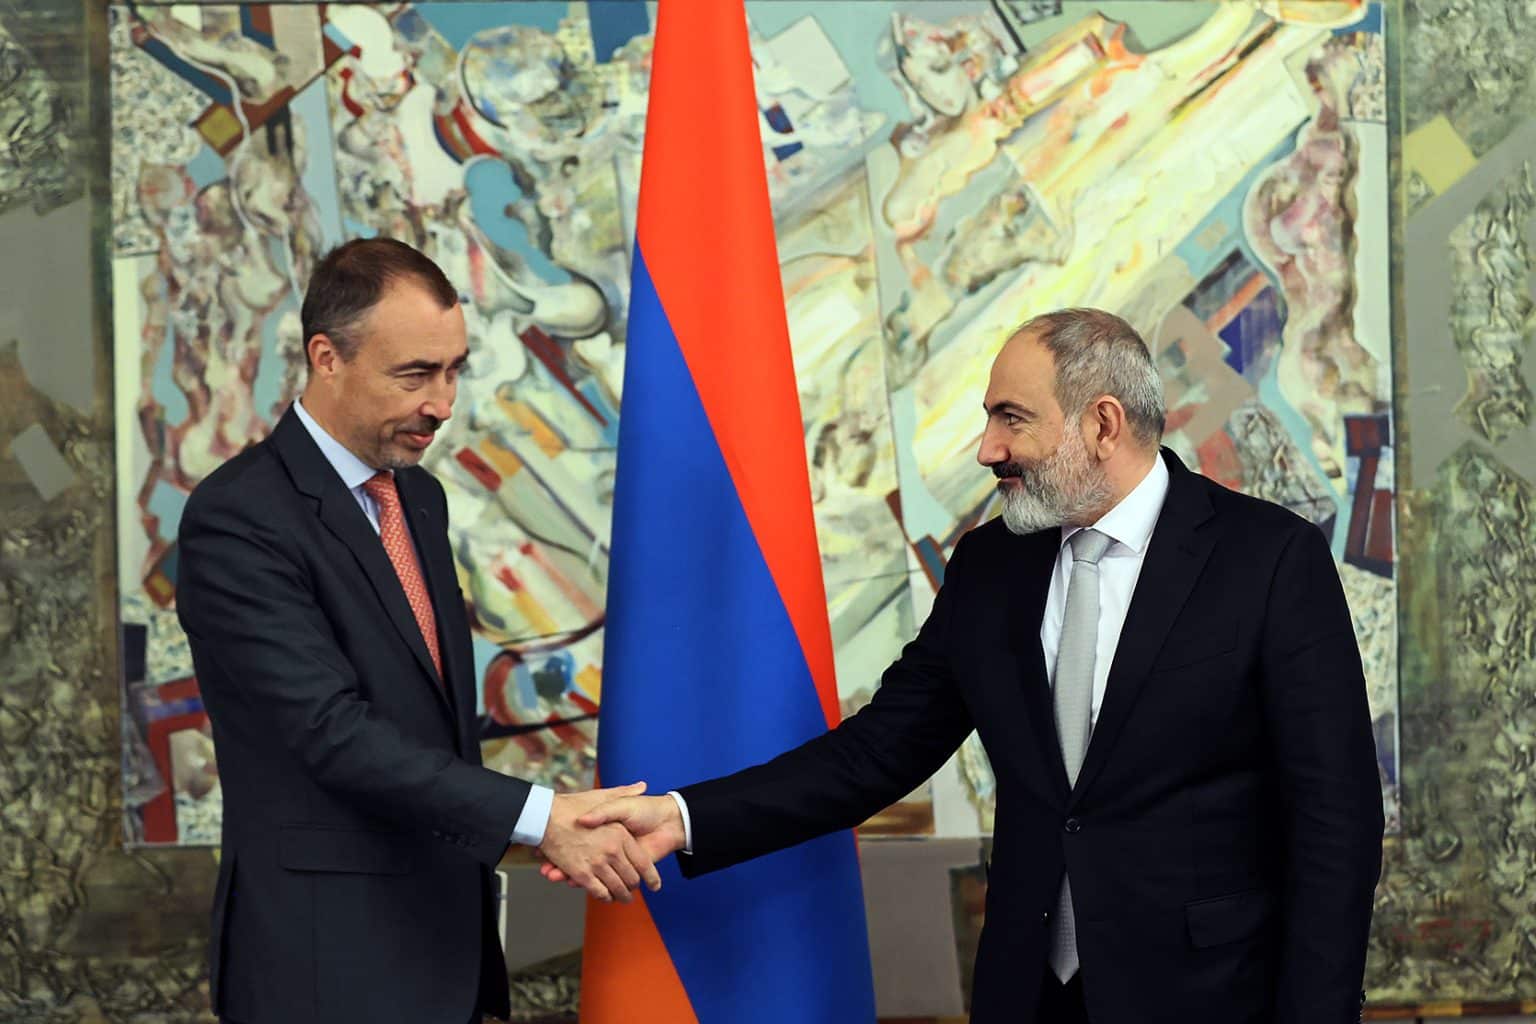 Տոյվո Կլաարը դրական է գնահատել հանդիպումները Հայաստանում